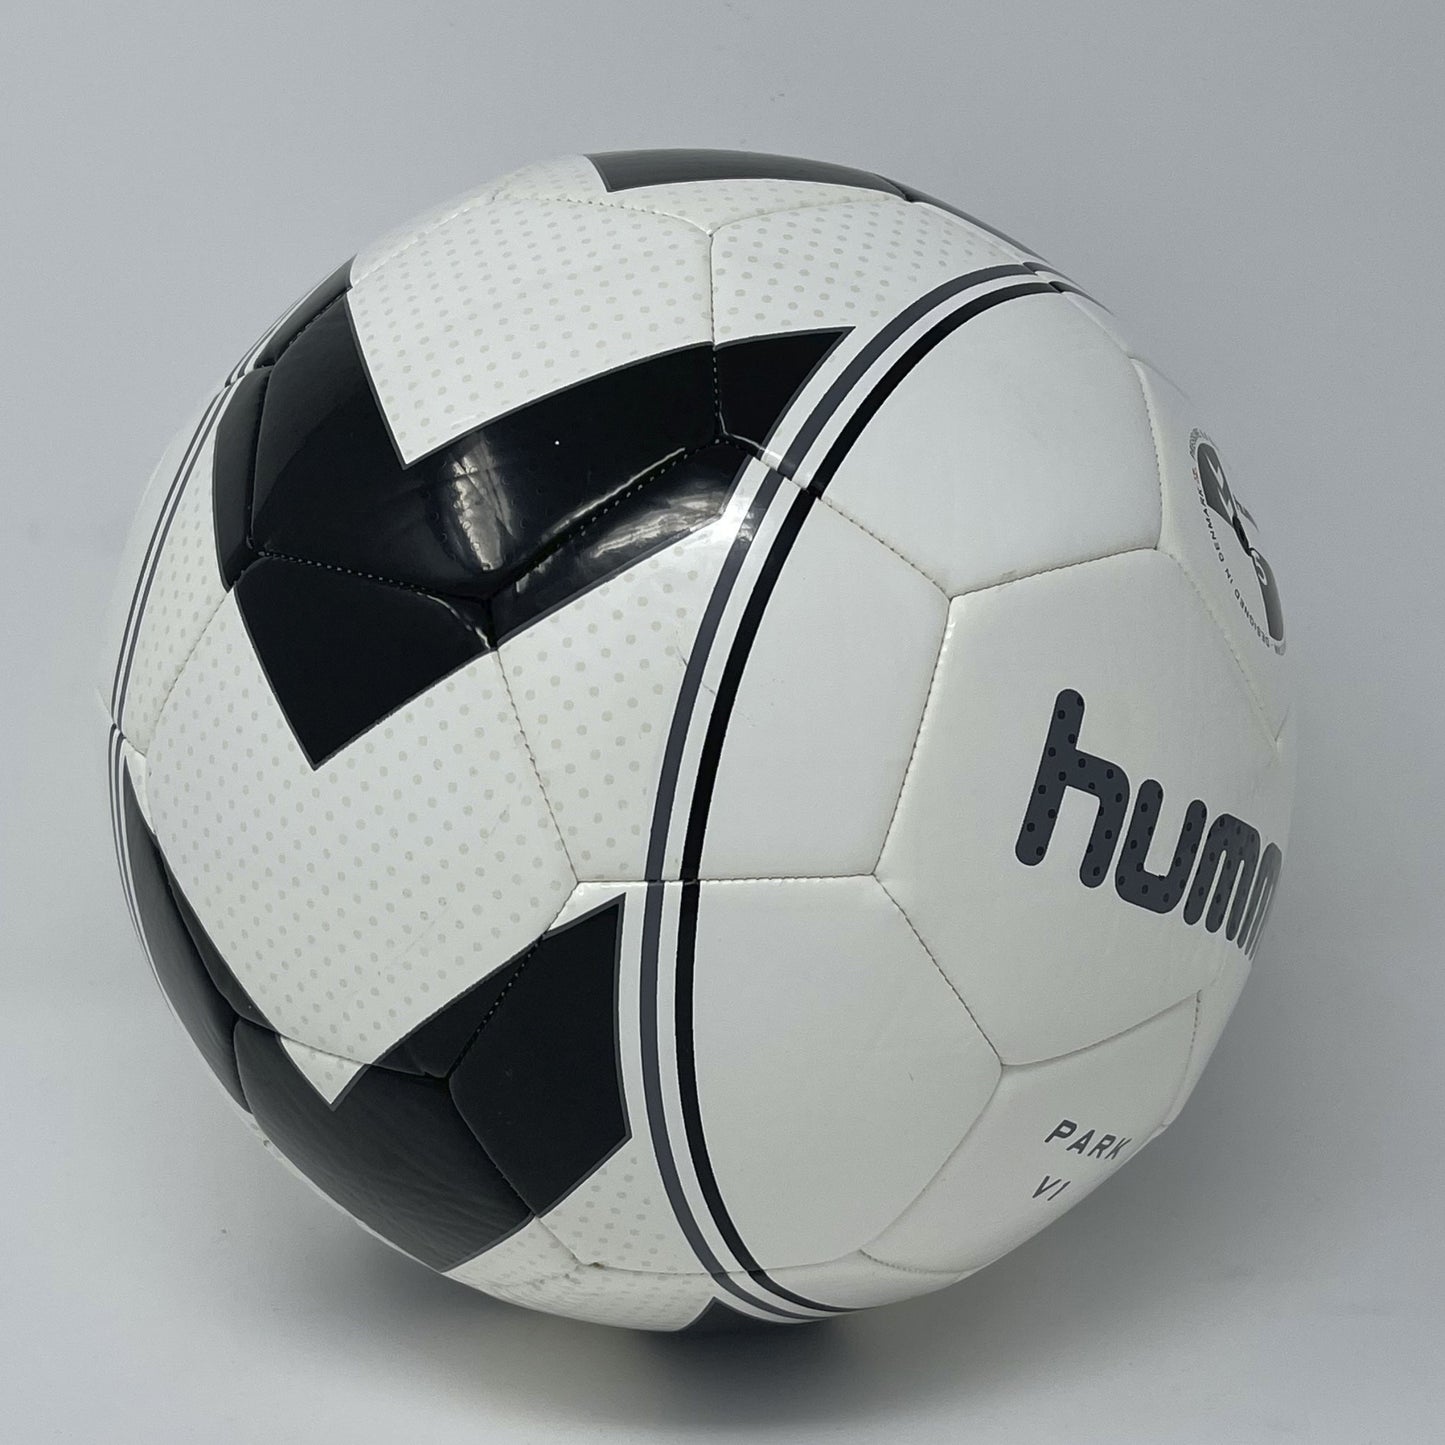 Hummel Park Soccer Ball - Size 5